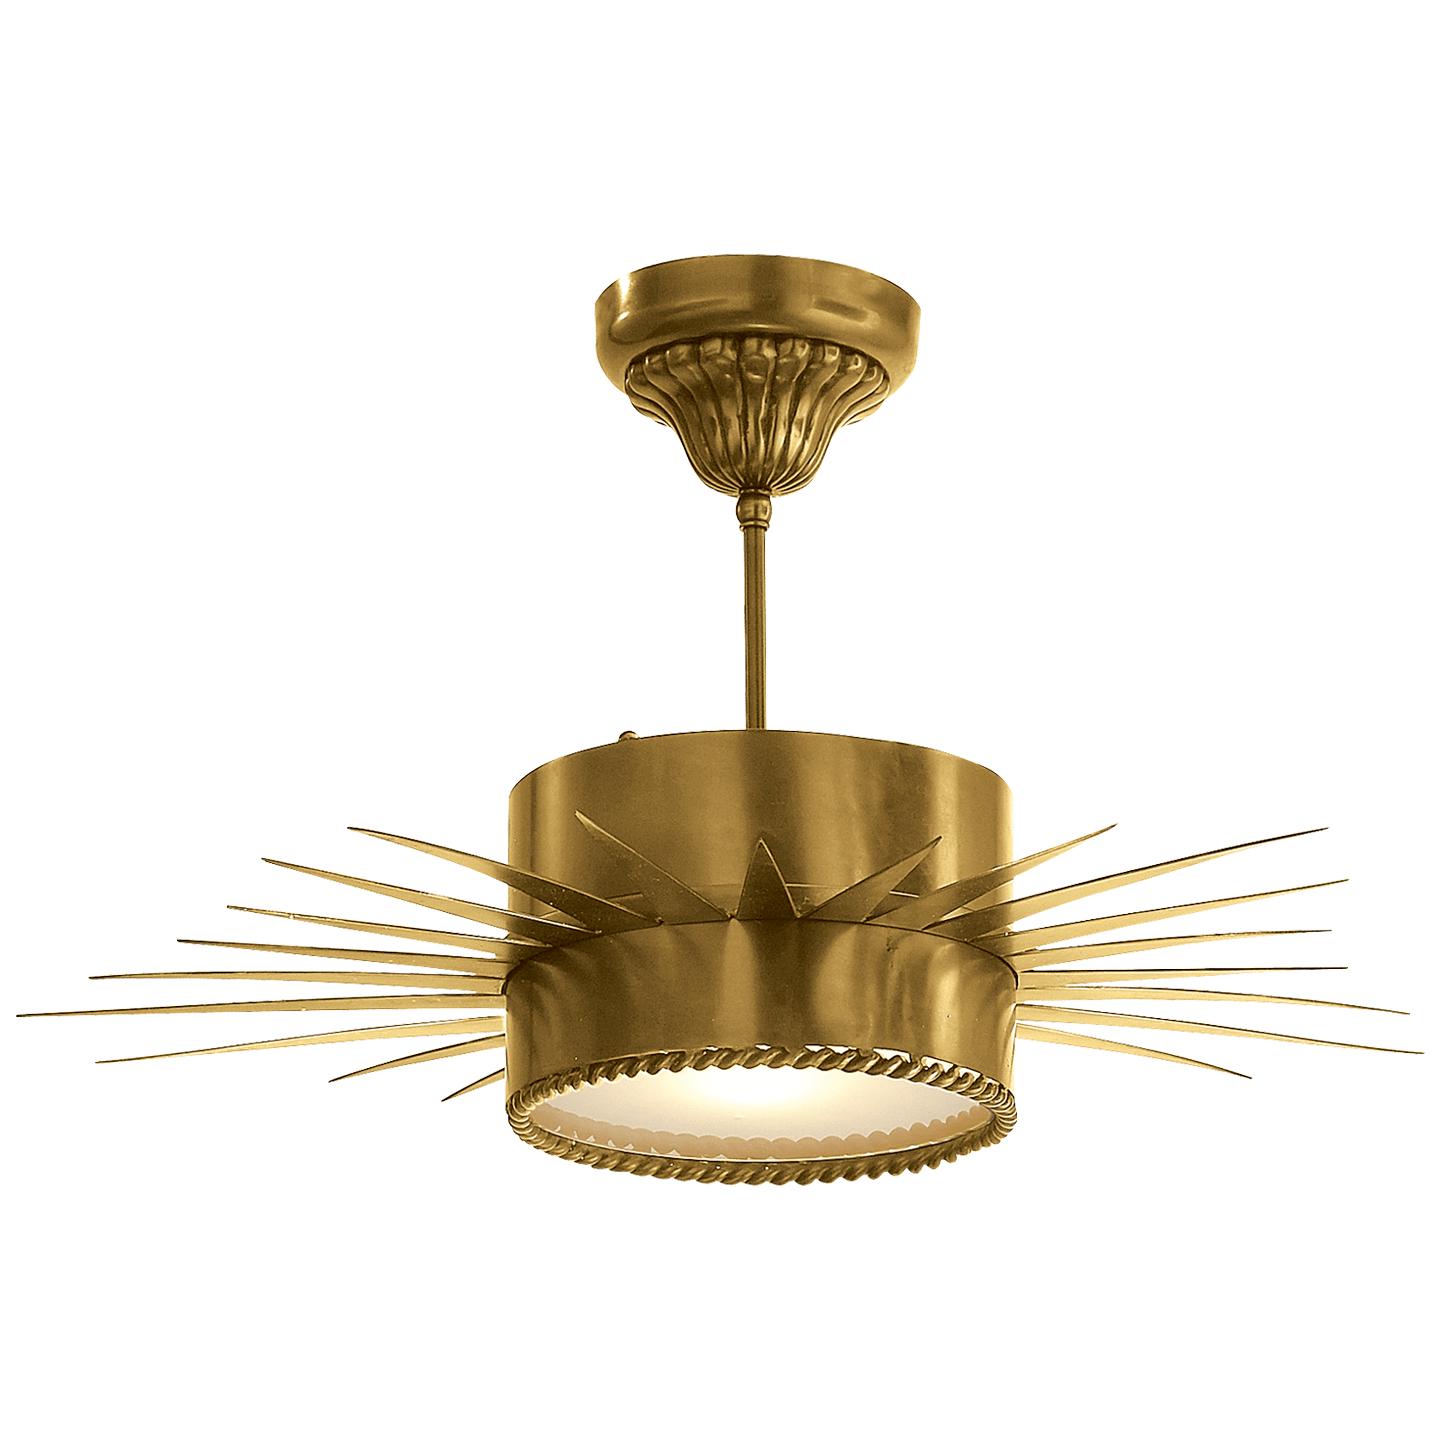 Купить Накладной светильник Soleil Medium Semi-Flush в интернет-магазине roooms.ru